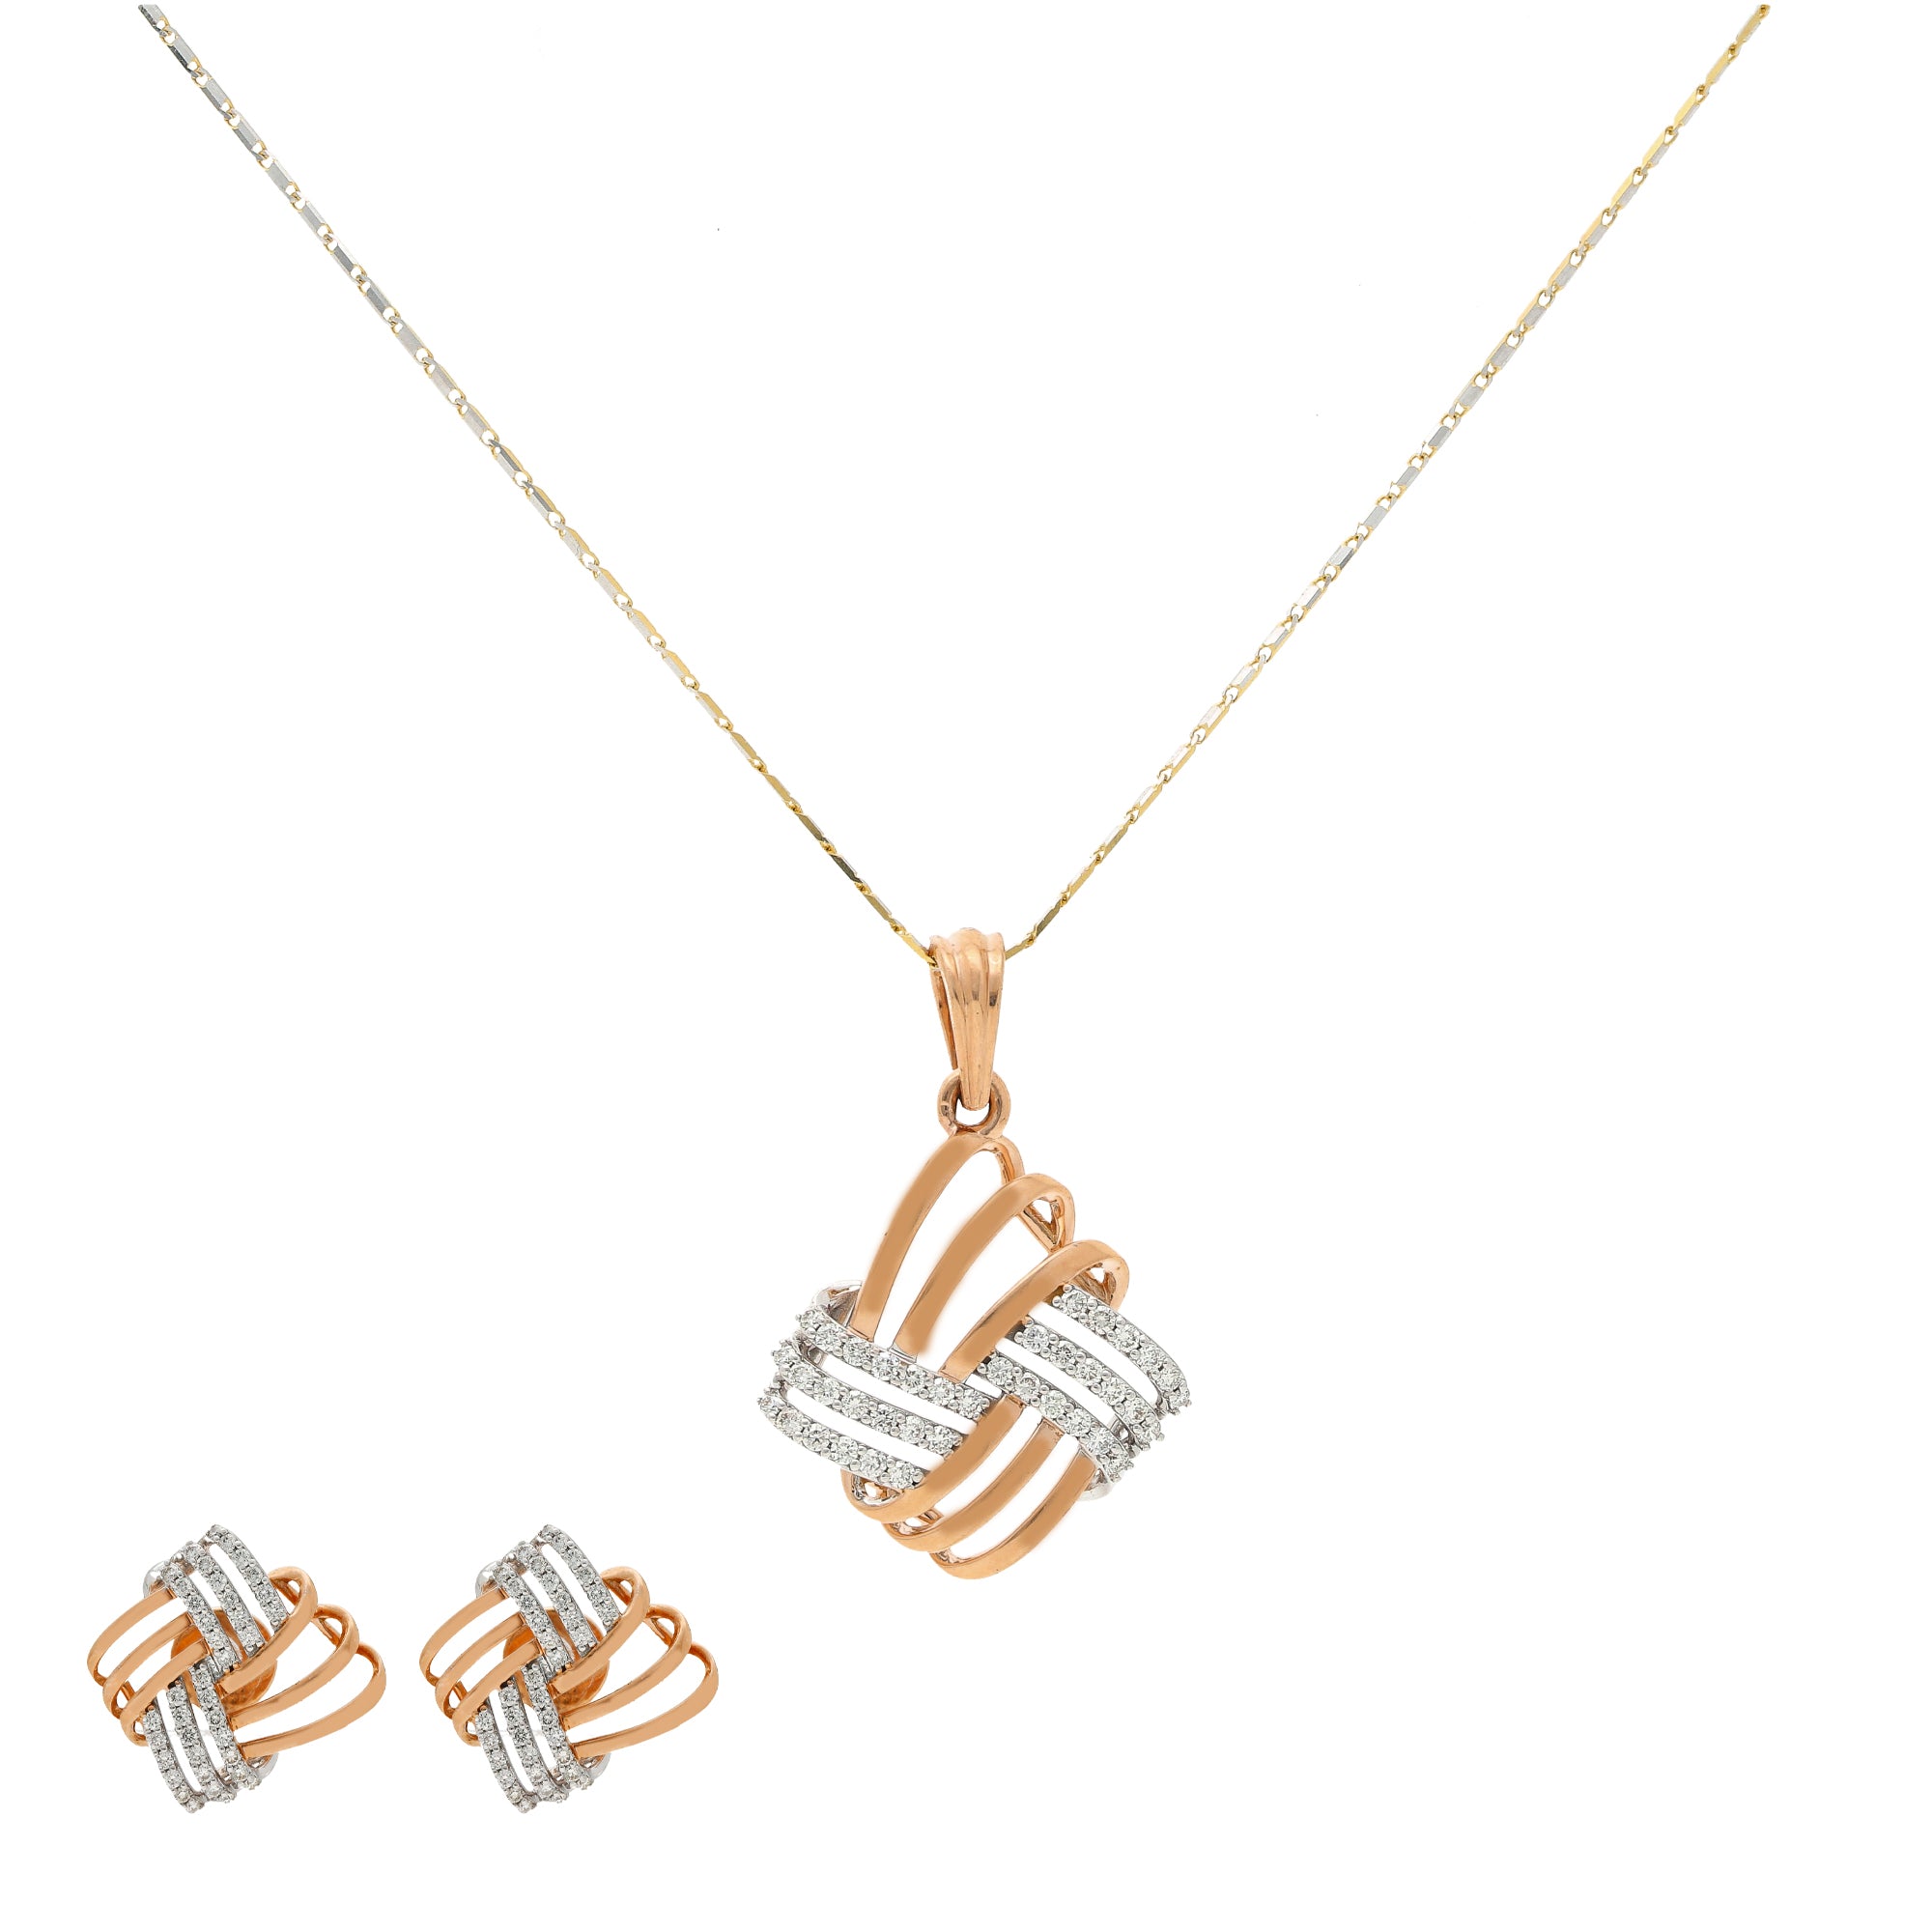 18K Gold Simple, Daily-Wear Diamond Necklace & Earrings Set